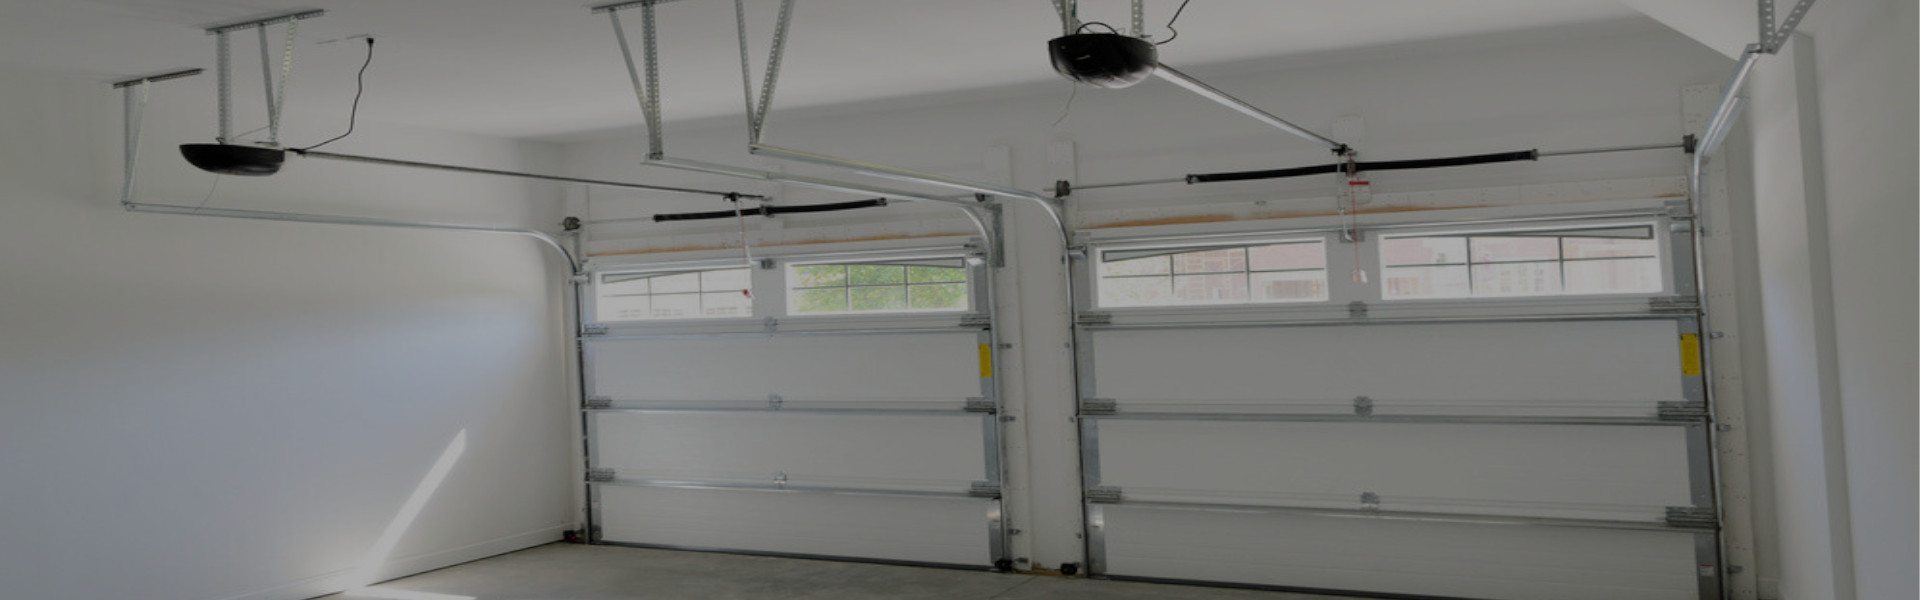 Slider Garage Door Repair, Glaziers in Rush Green, RM7